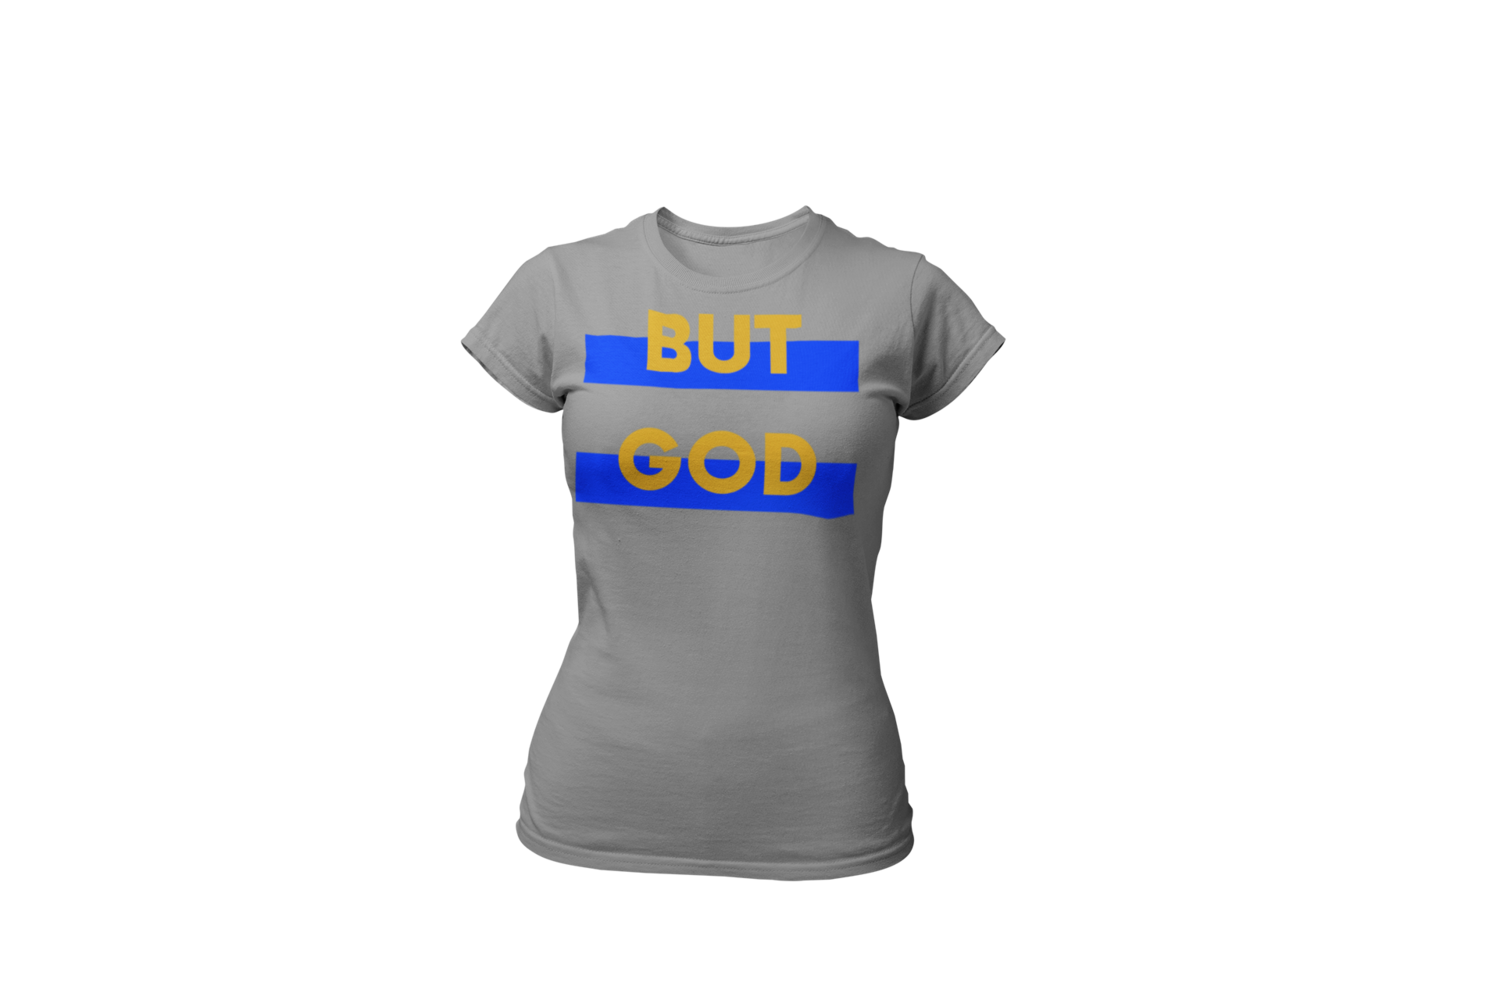 BUT GOD | Blue & Gold Women's Tee | Gray T-Shirt